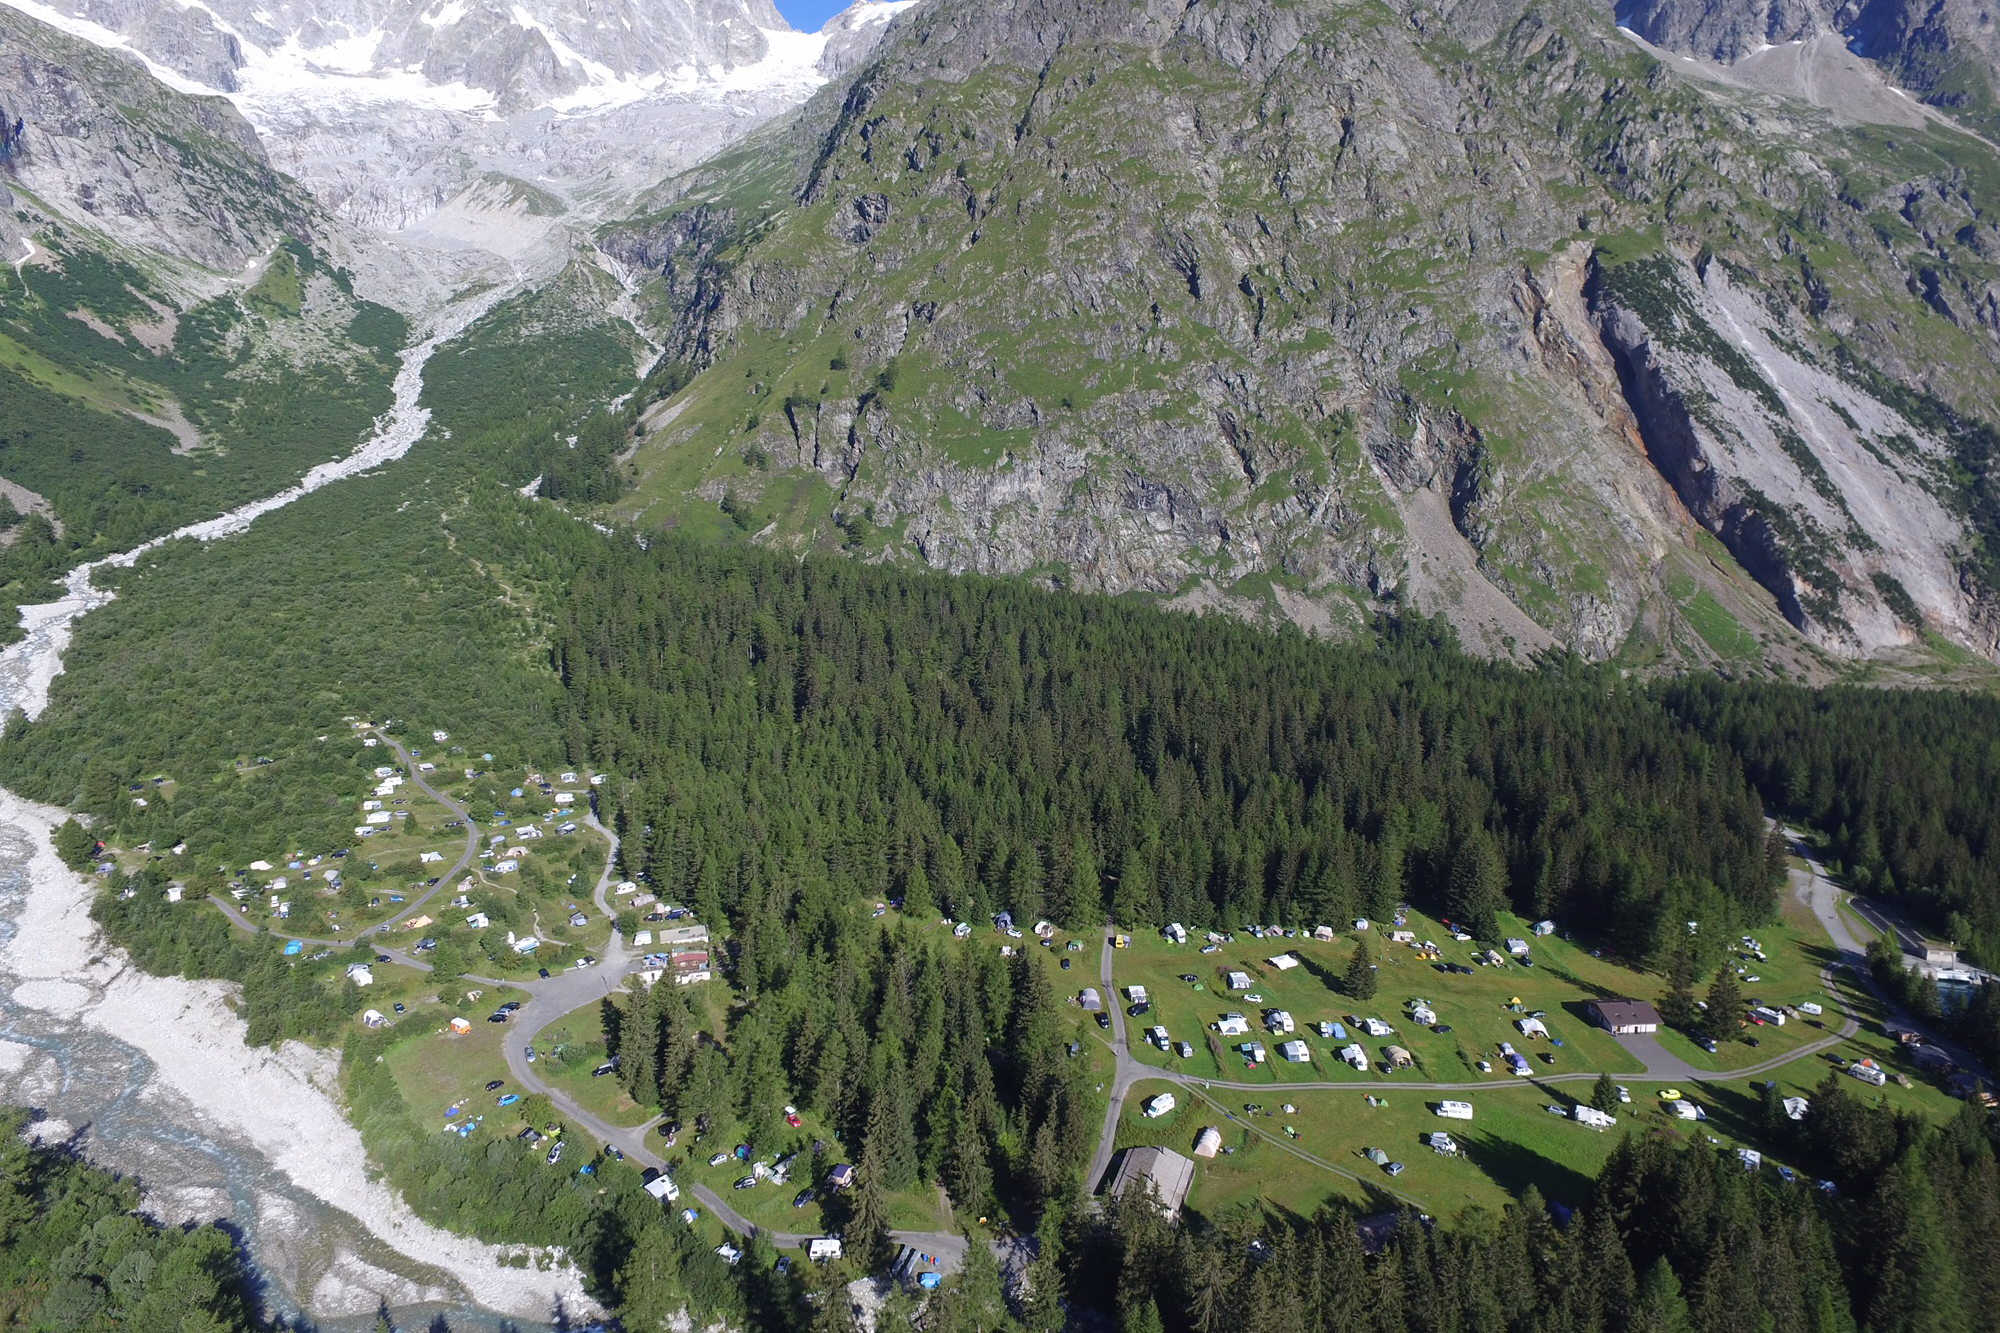 Le Camping des Glaciers porte le nom du glacier sur lequel il est situé, au pied du massif du Dolent.